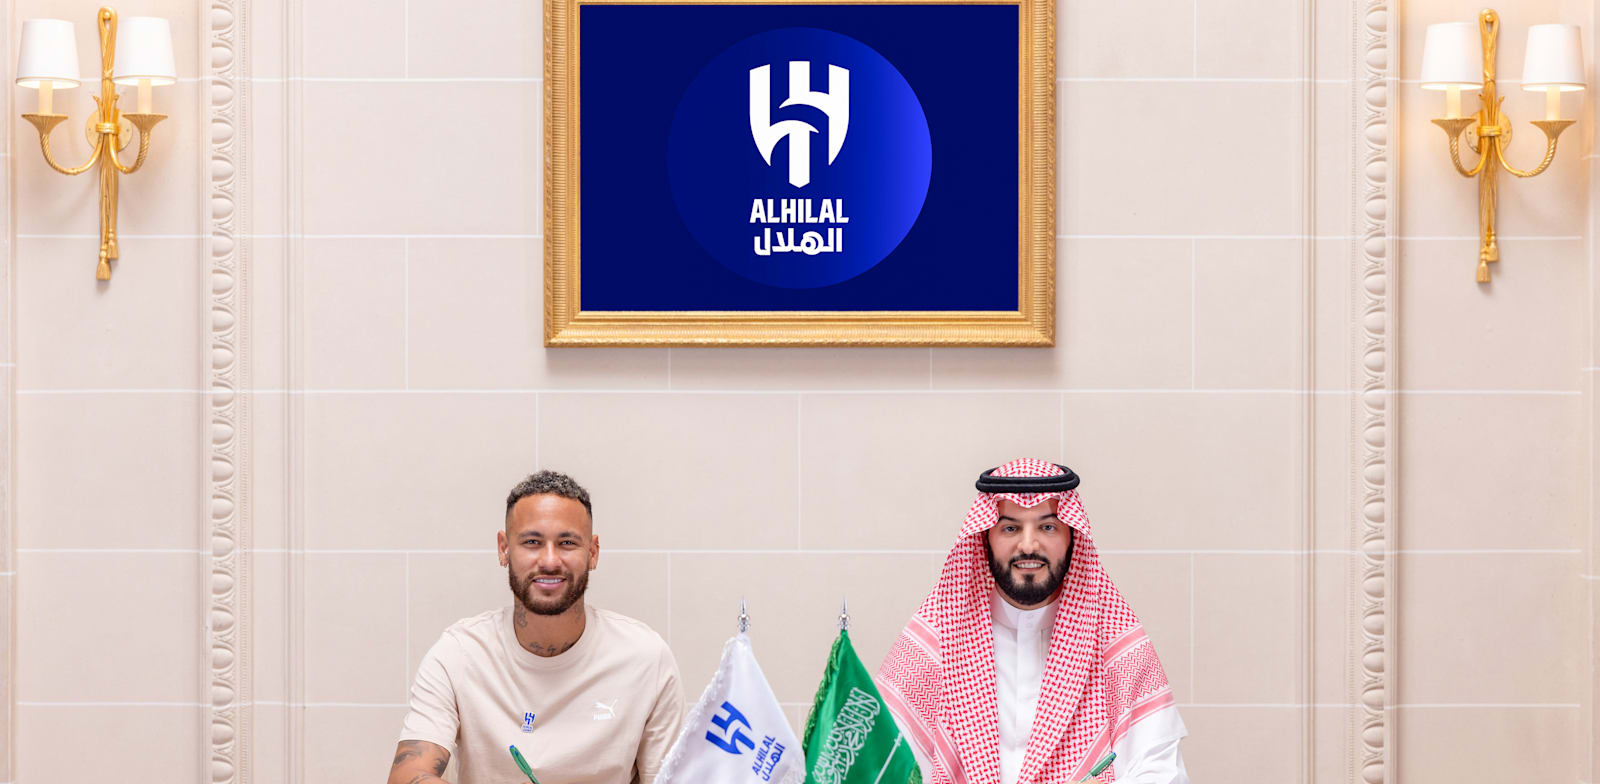 ניימאר (משמאל) ונשיא אל–הילאל פהד בן נפל. חתם לשנתיים / צילום: Reuters, AlHilal Saudi Club / Handout